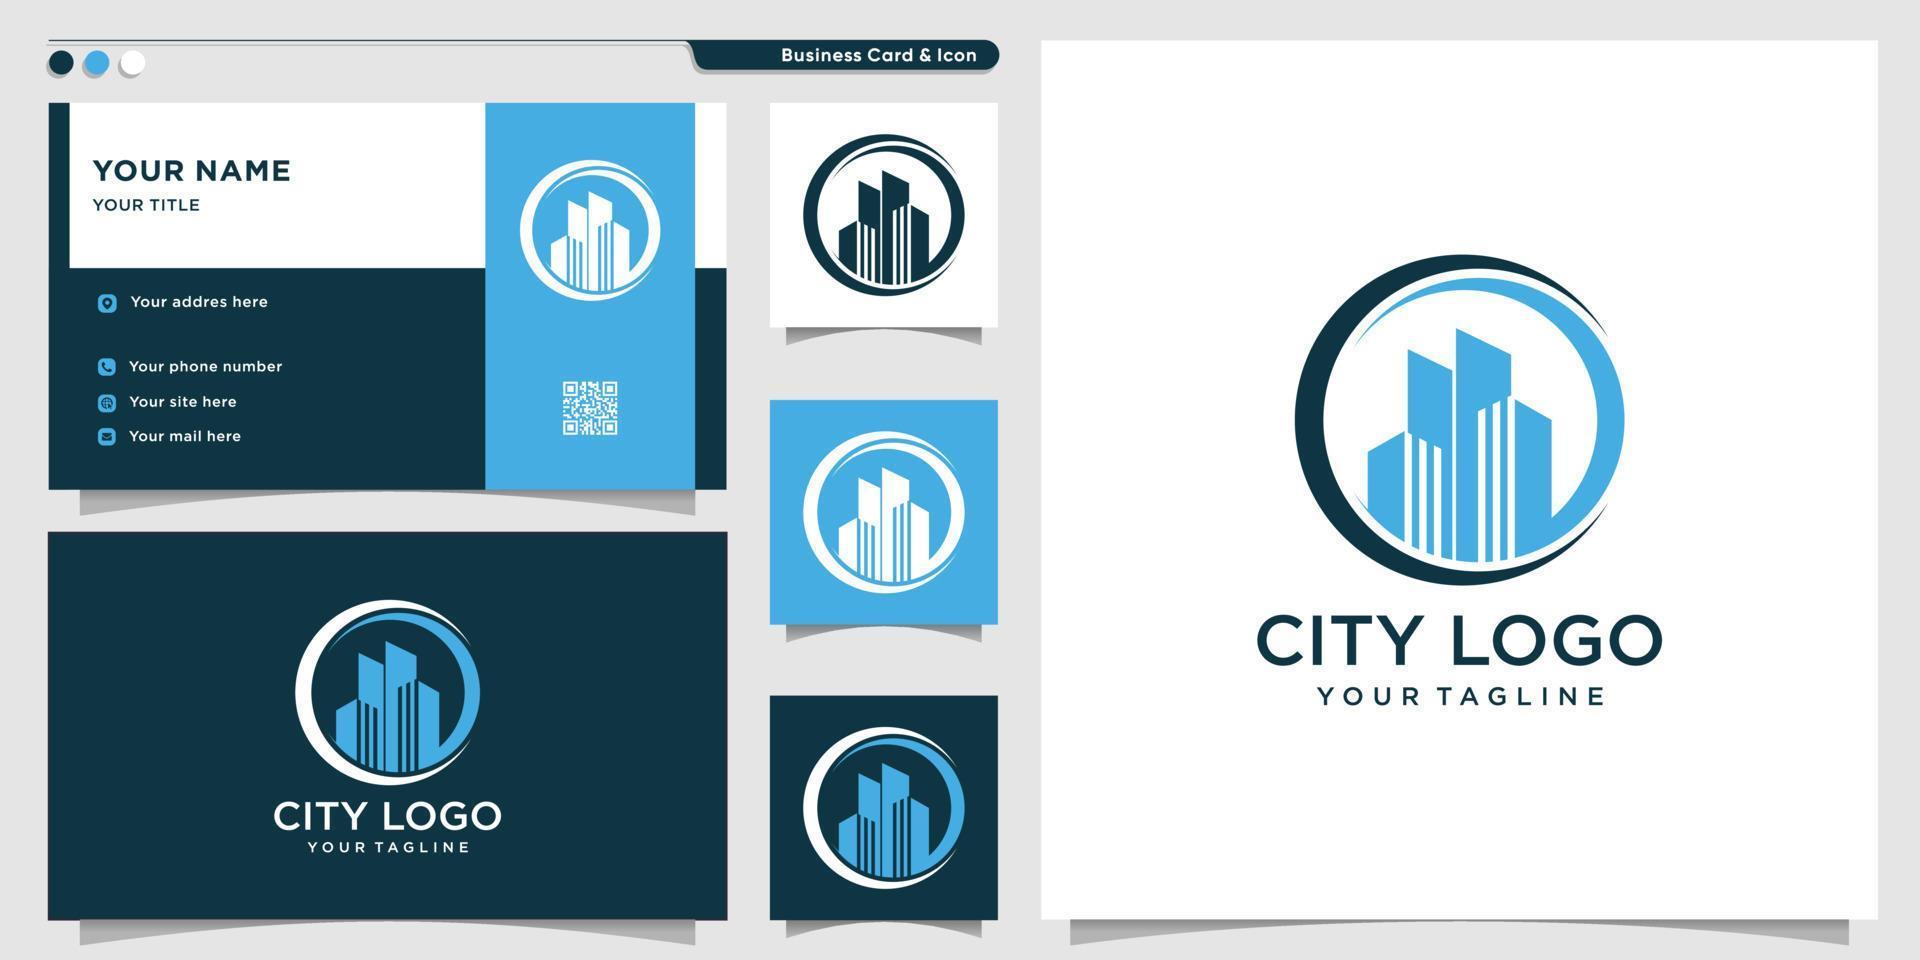 logo della città con stile cerchio e modello di progettazione di biglietti da visita, città, logo, vettore moderno e premium